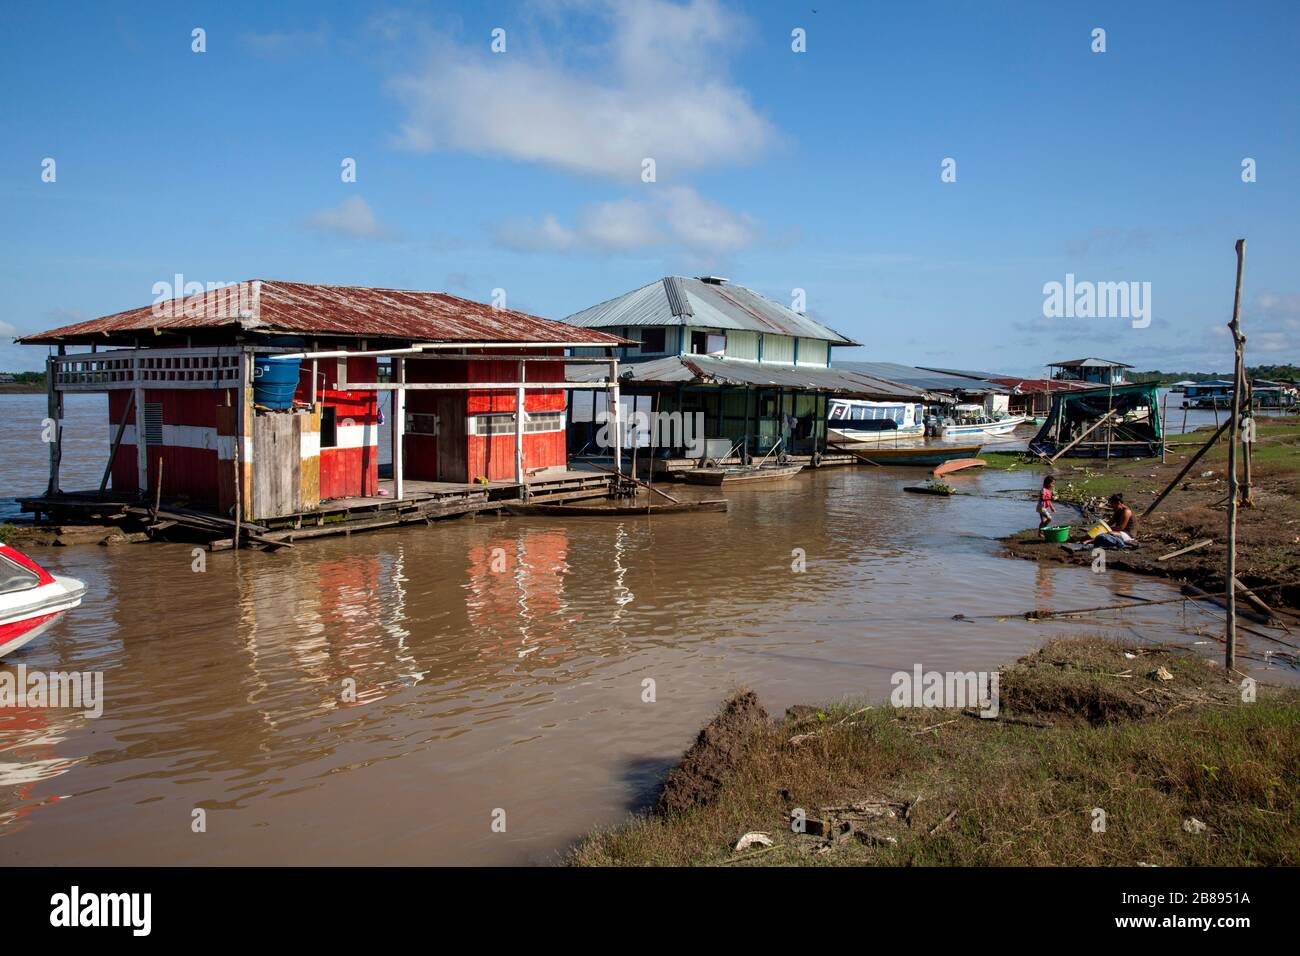 Schwimmendes Haus auf dem Amazonas, Brasilien Stockfotografie - Alamy